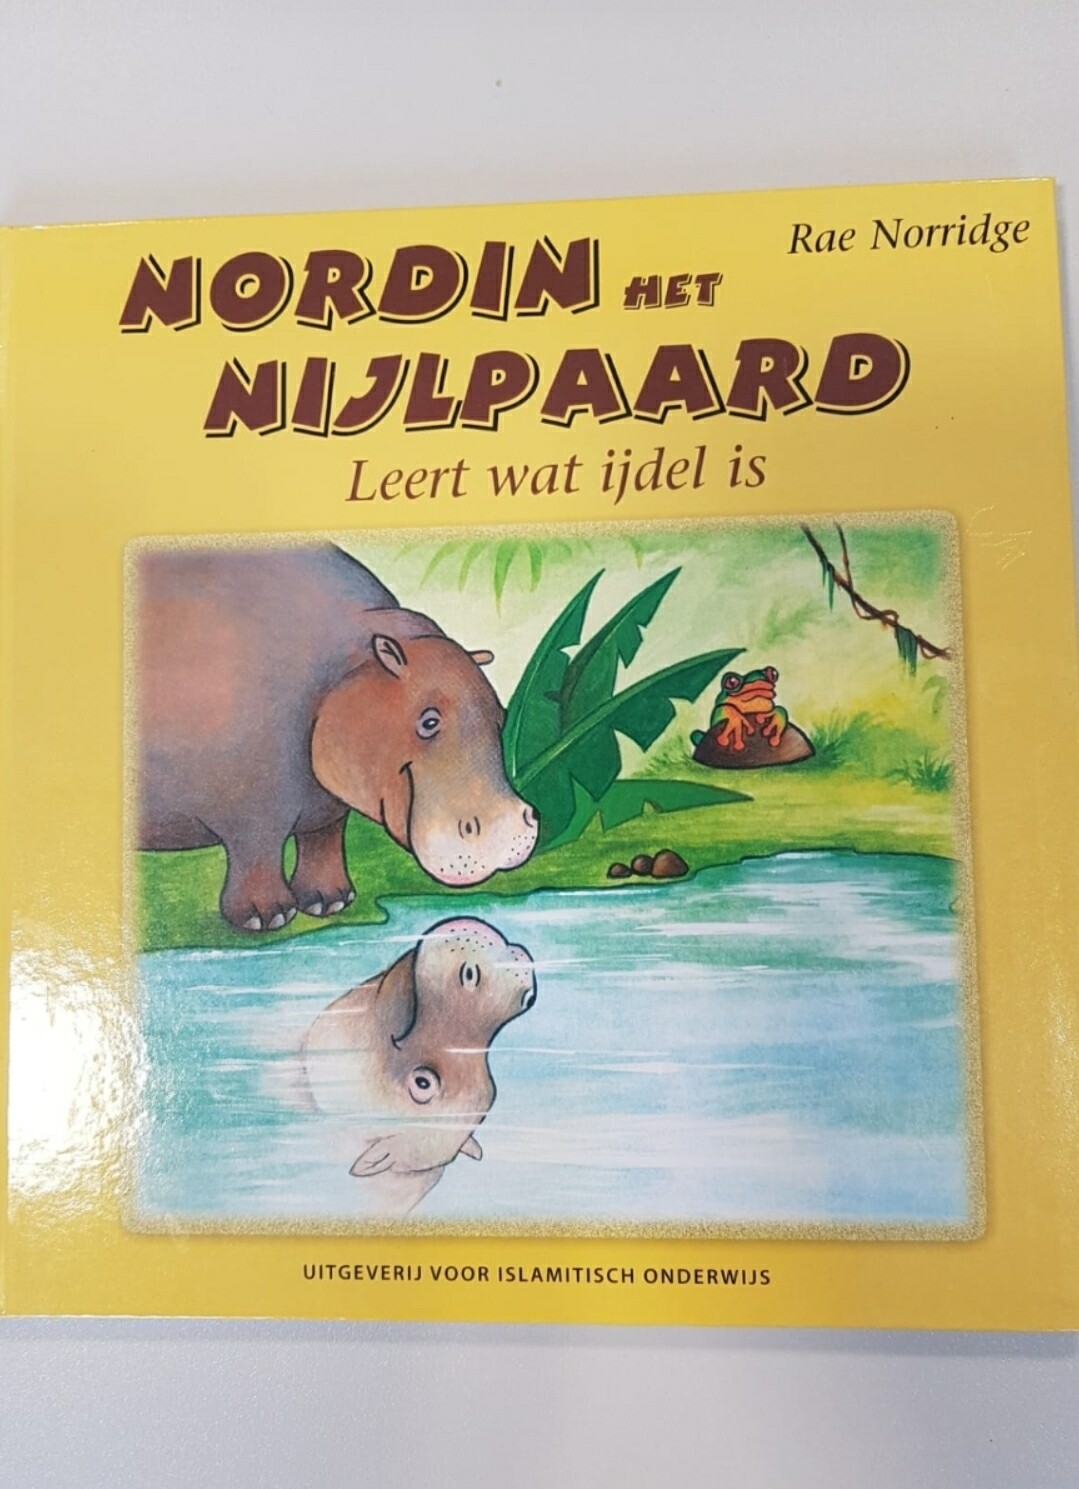 Nordin het nijlpaard leert wat ijdel is